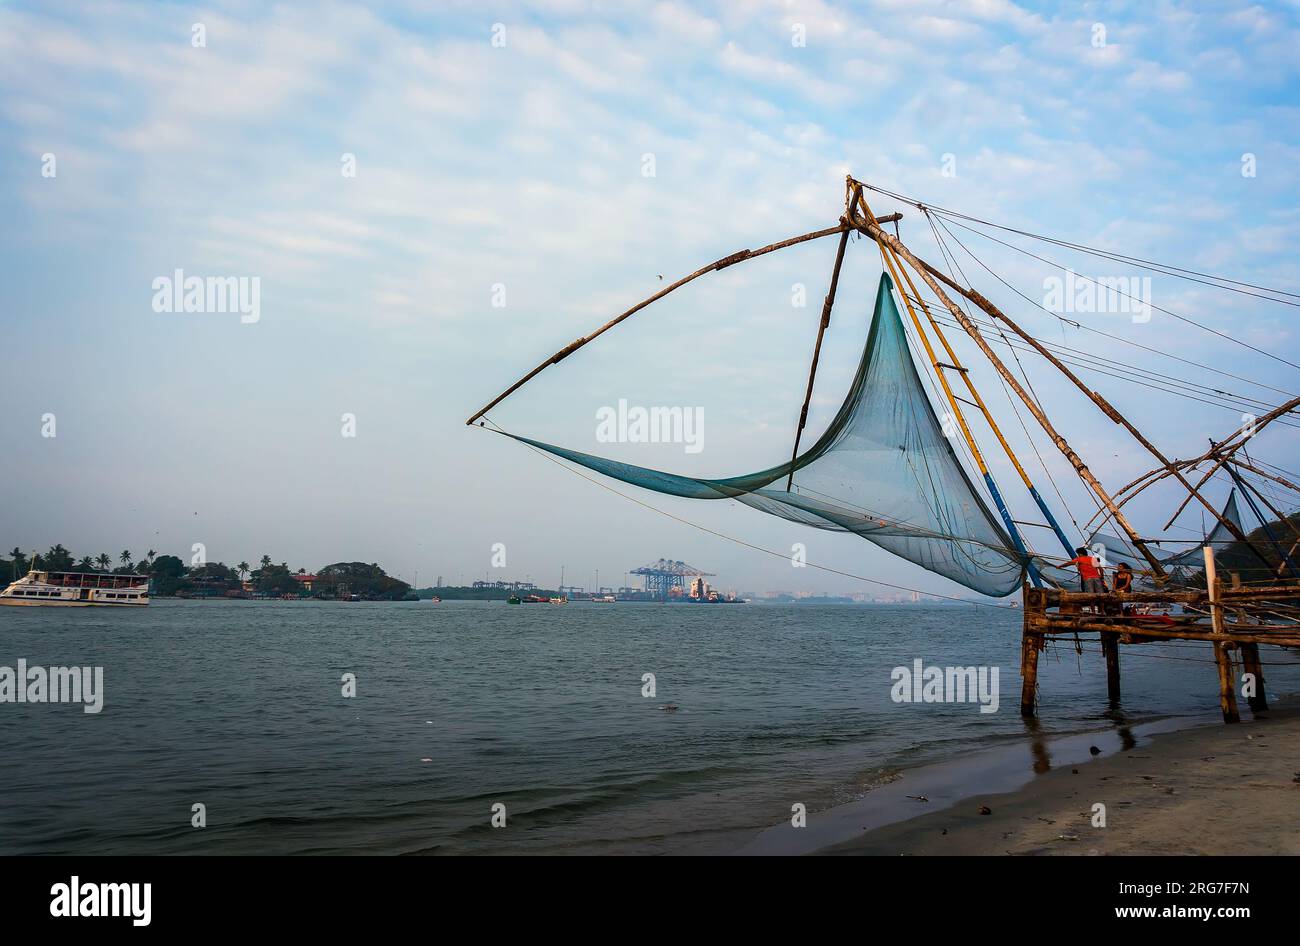 Chinesische Fischernetze und kleines Schiff bei dramatischem Sonnenuntergang am Himmel. Chinesische Fischernetze. Vembanad Lake, Kerala, Südindien Stockfoto